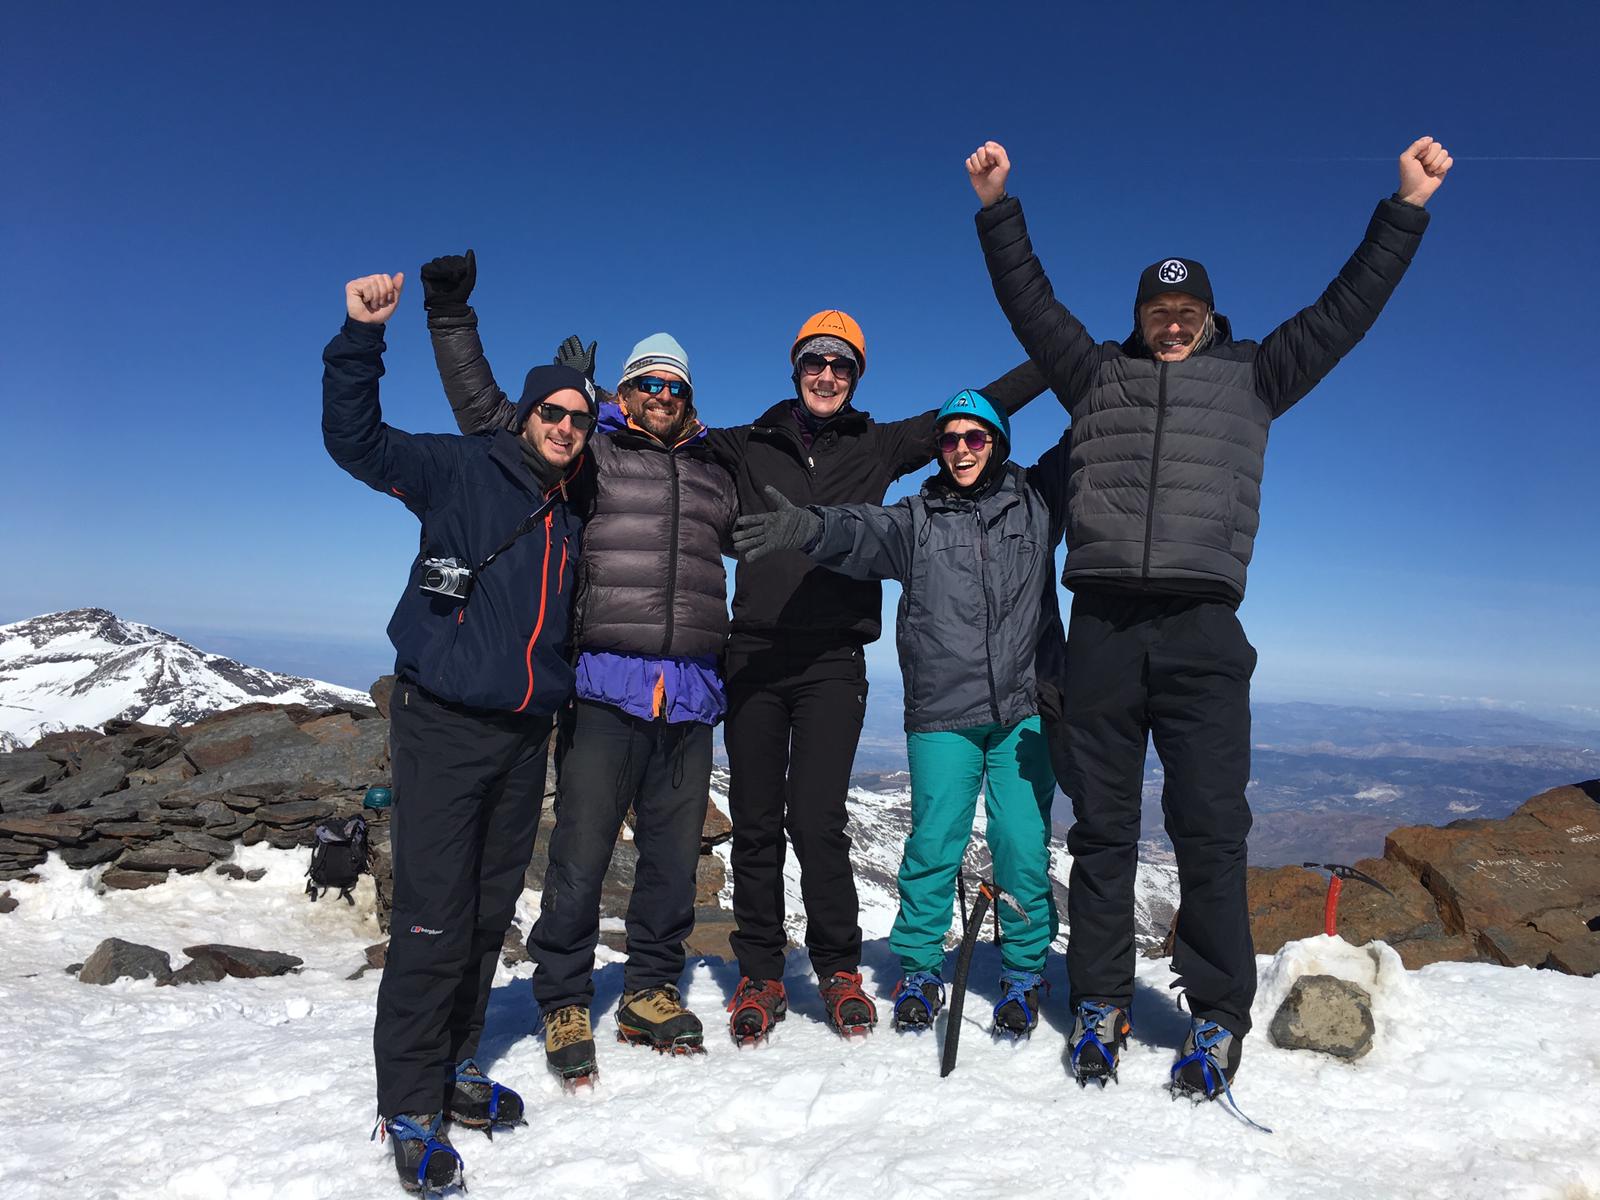 Mulhacen 2 day ascent 15 - 16 April 2019